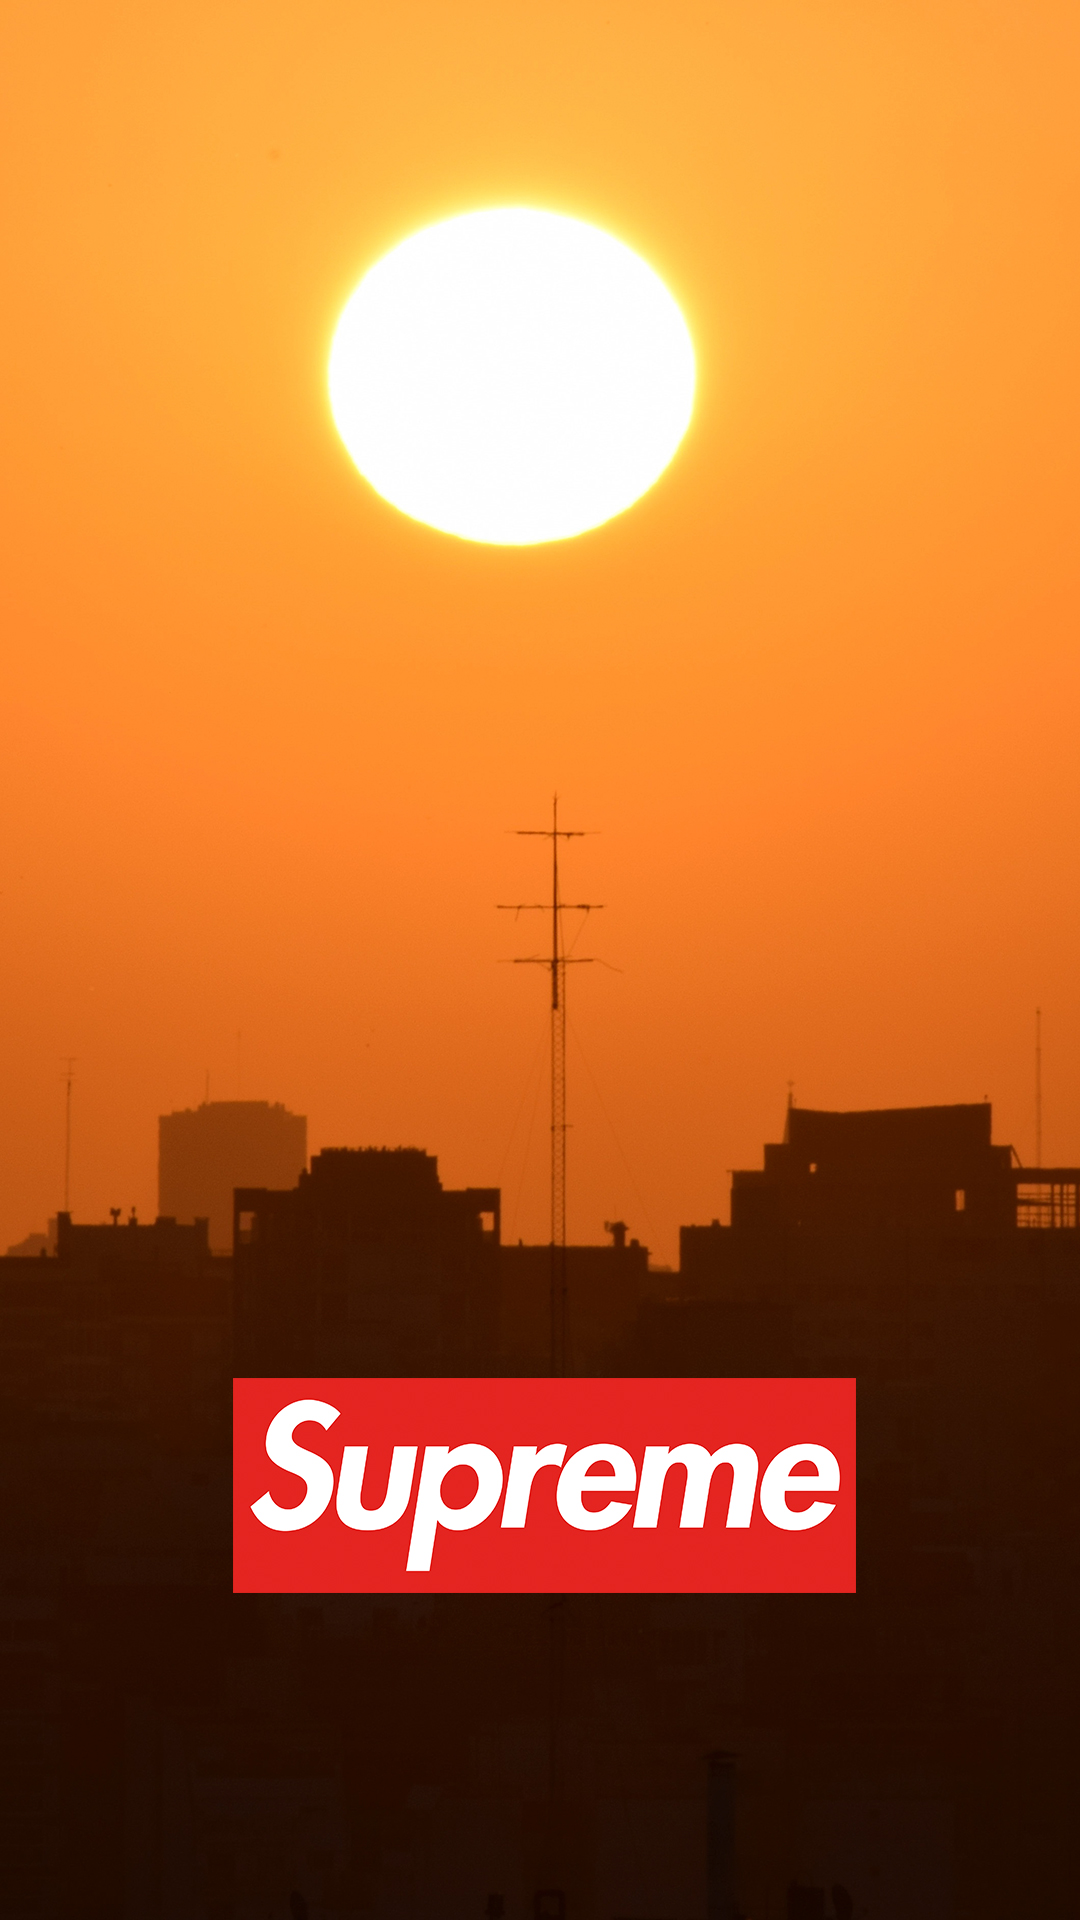 Supreme Sunrise